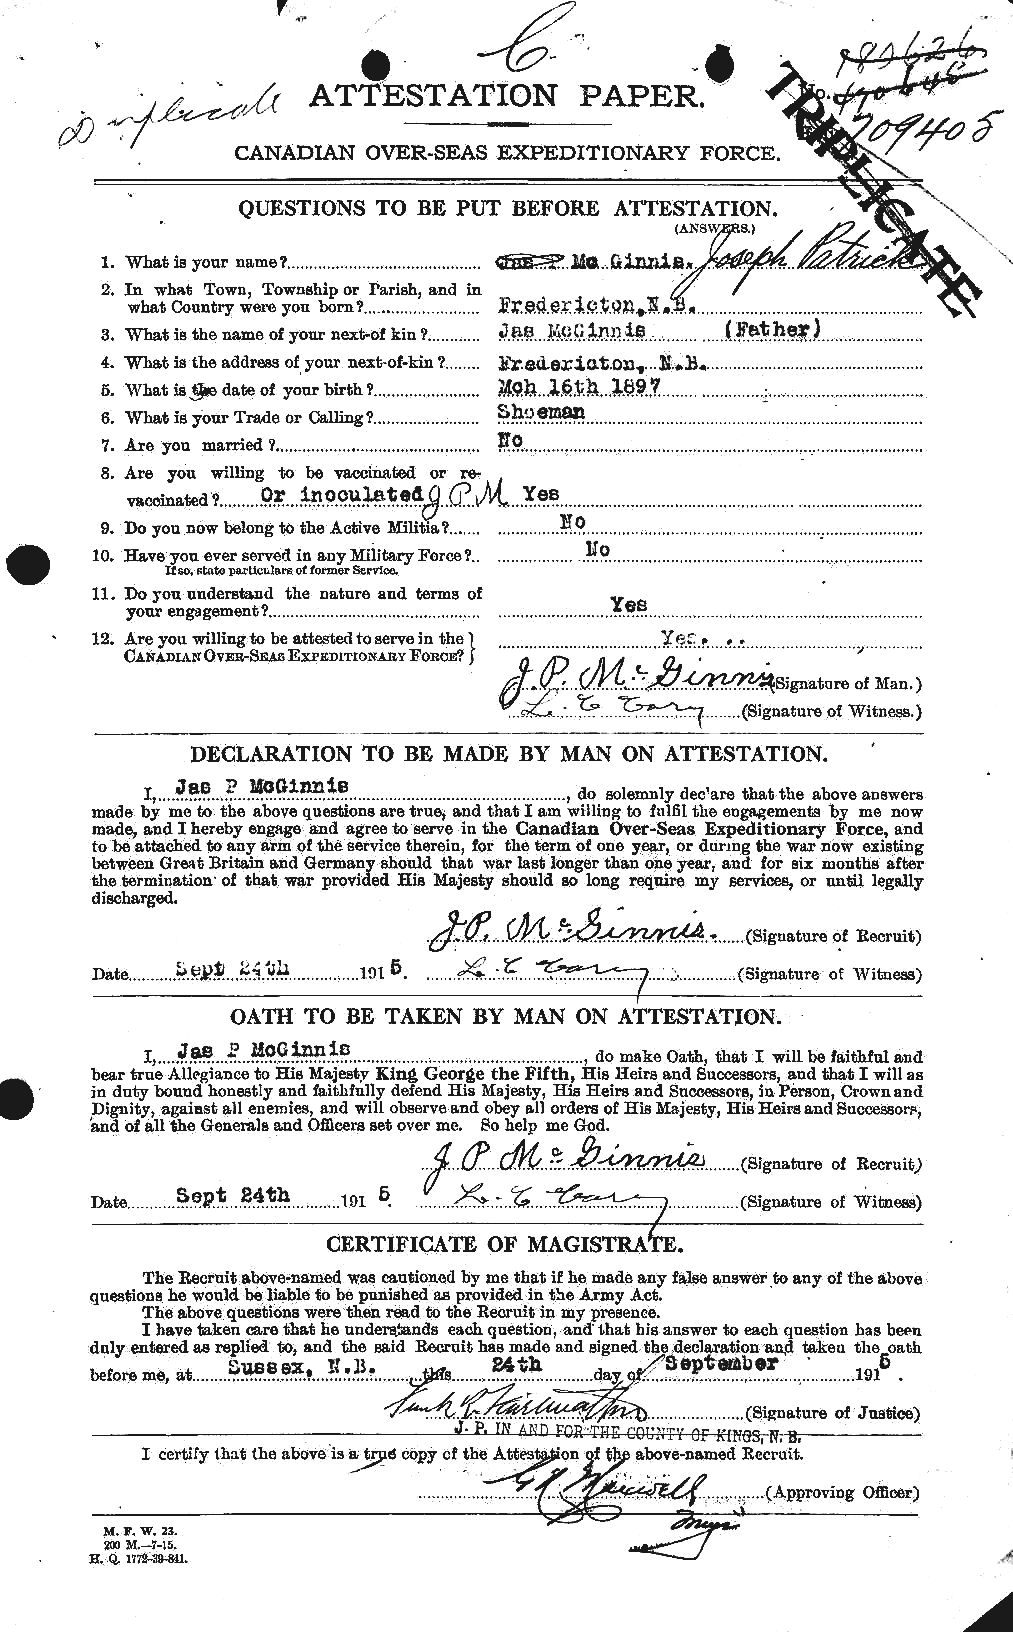 Dossiers du Personnel de la Première Guerre mondiale - CEC 526411a